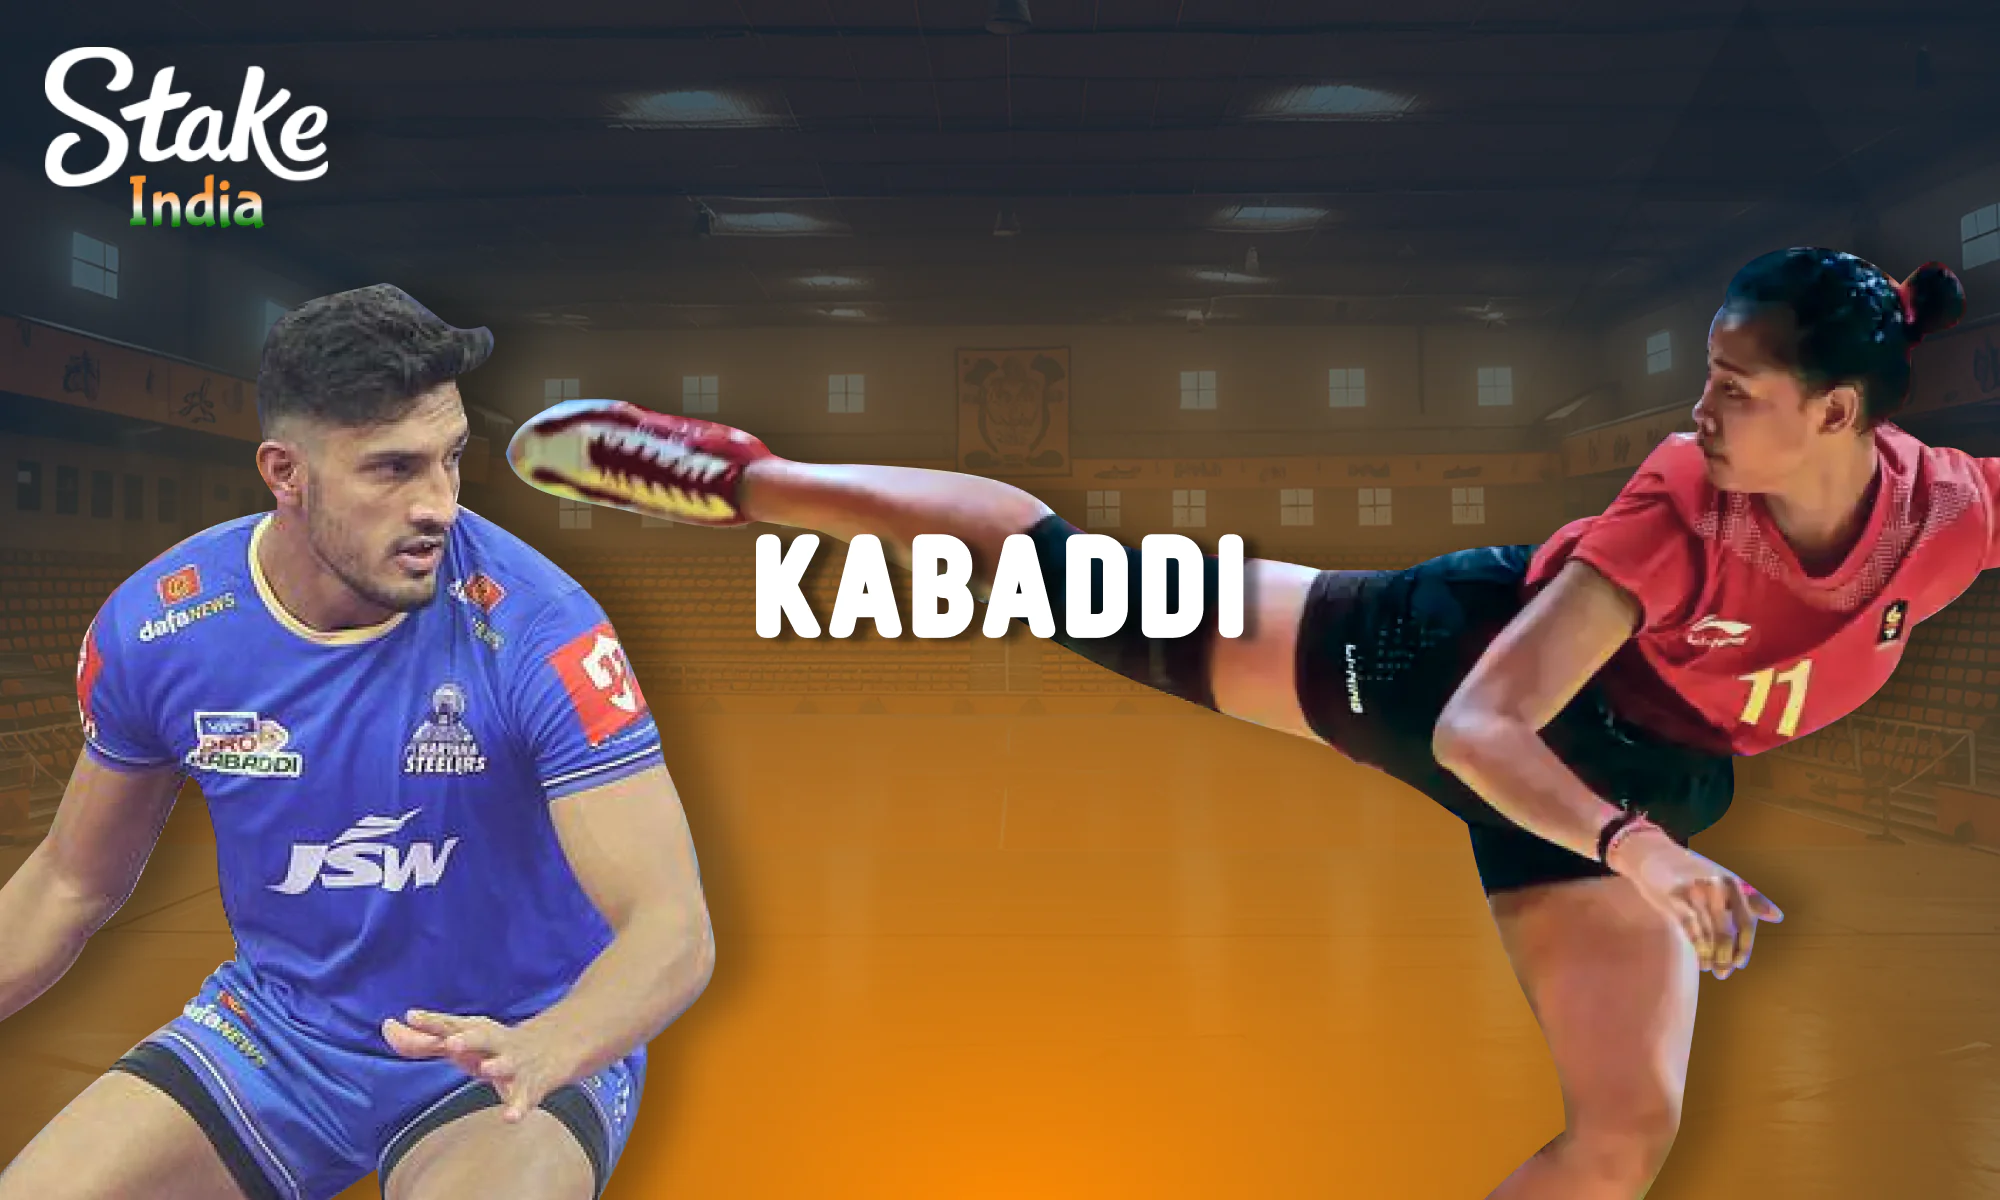 Kabaddi betting at Stake for India